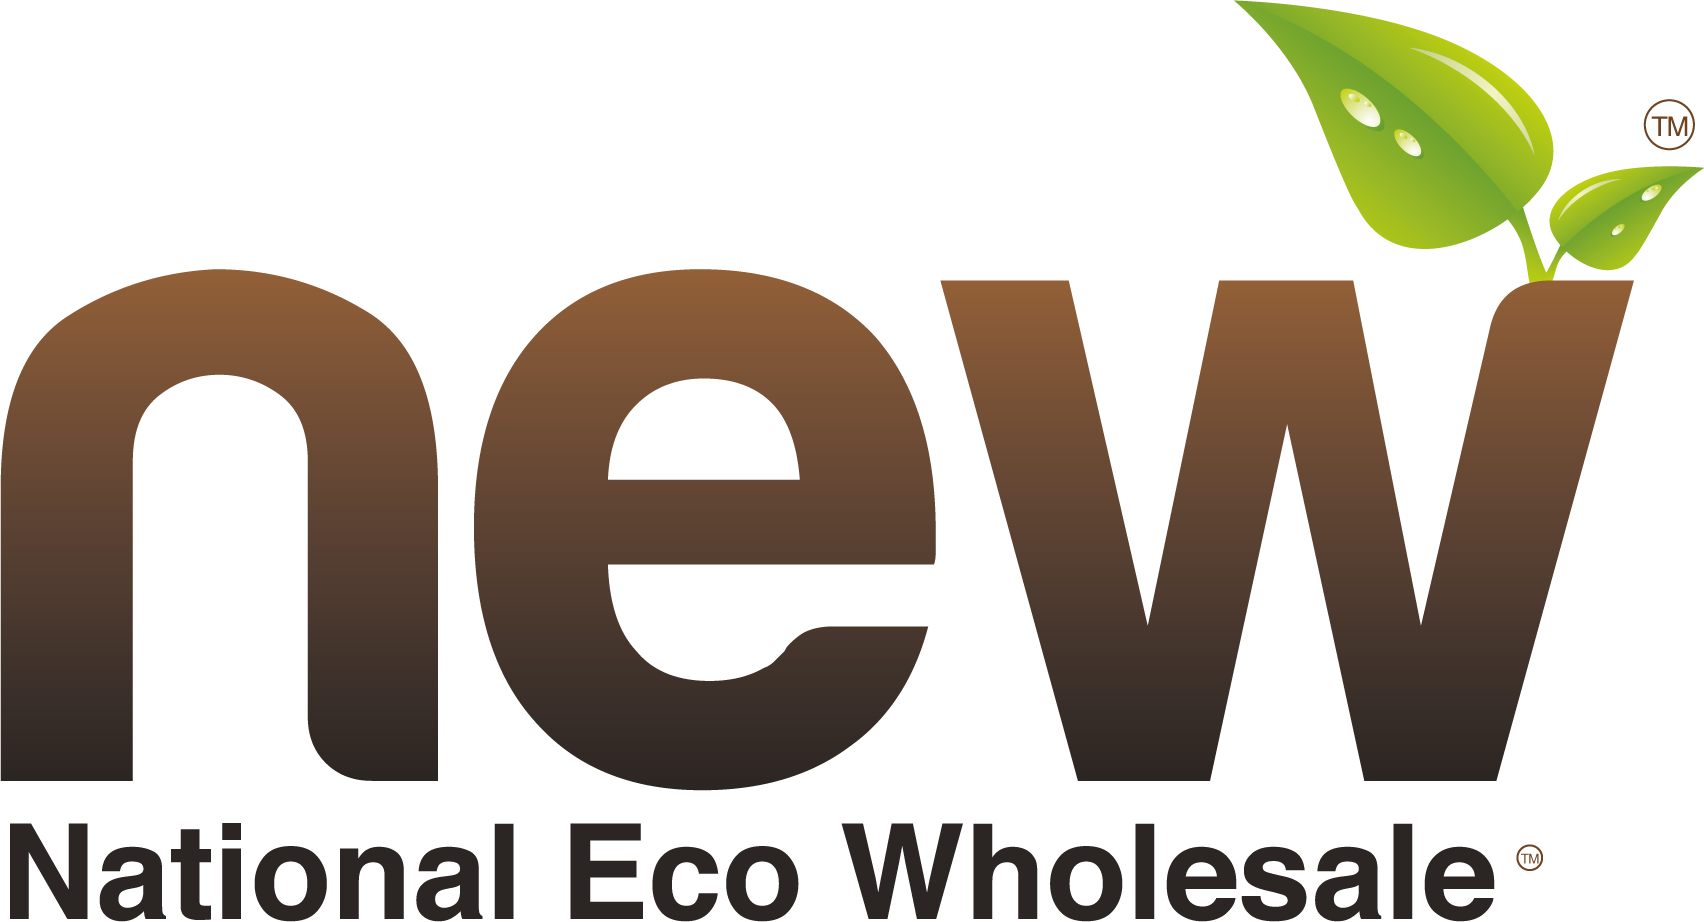 National Eco Wholesale logo